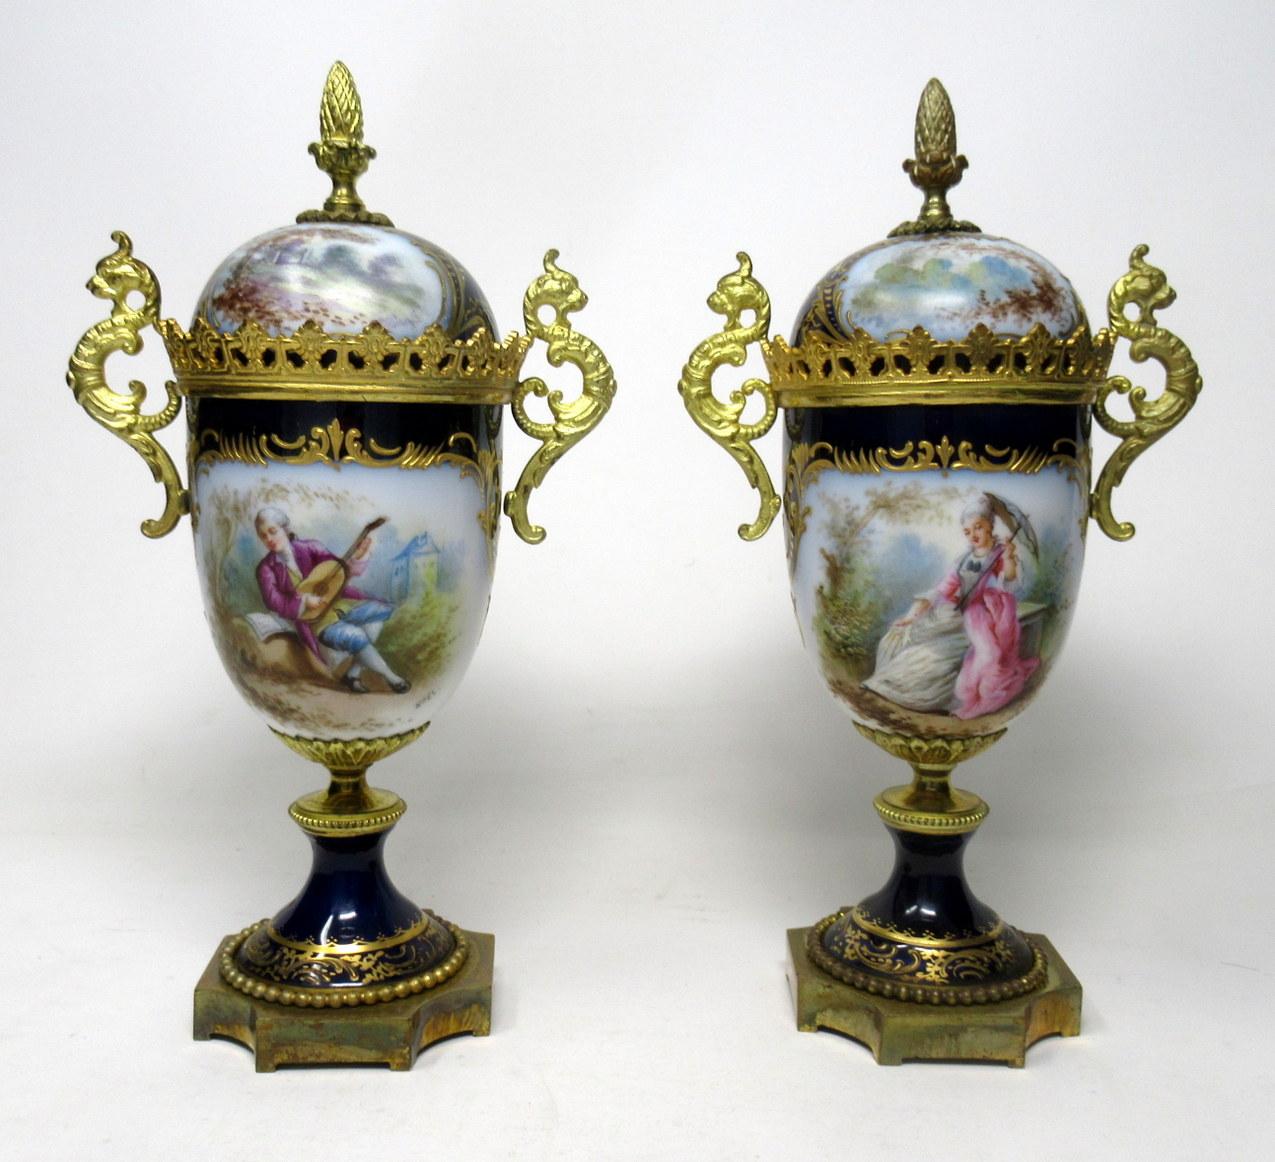 Late Victorian Sèvres Porcelain Watteau Scene Ormolu Cobalt Blue Urns Vases 19th Century, Pair